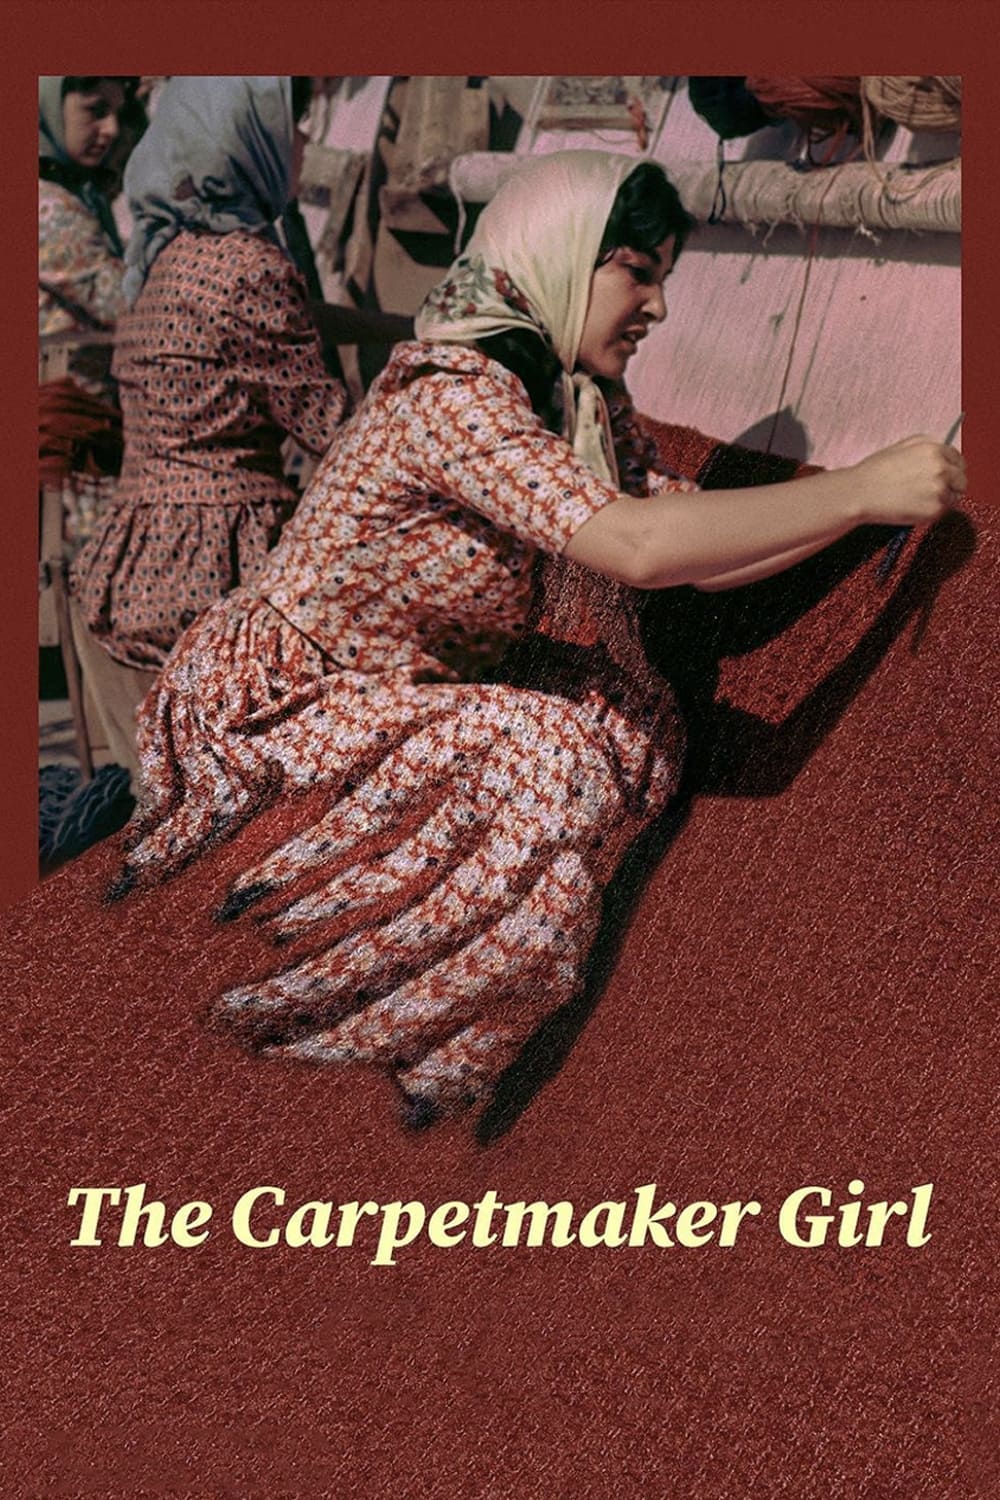 The Carpetmaker Girl